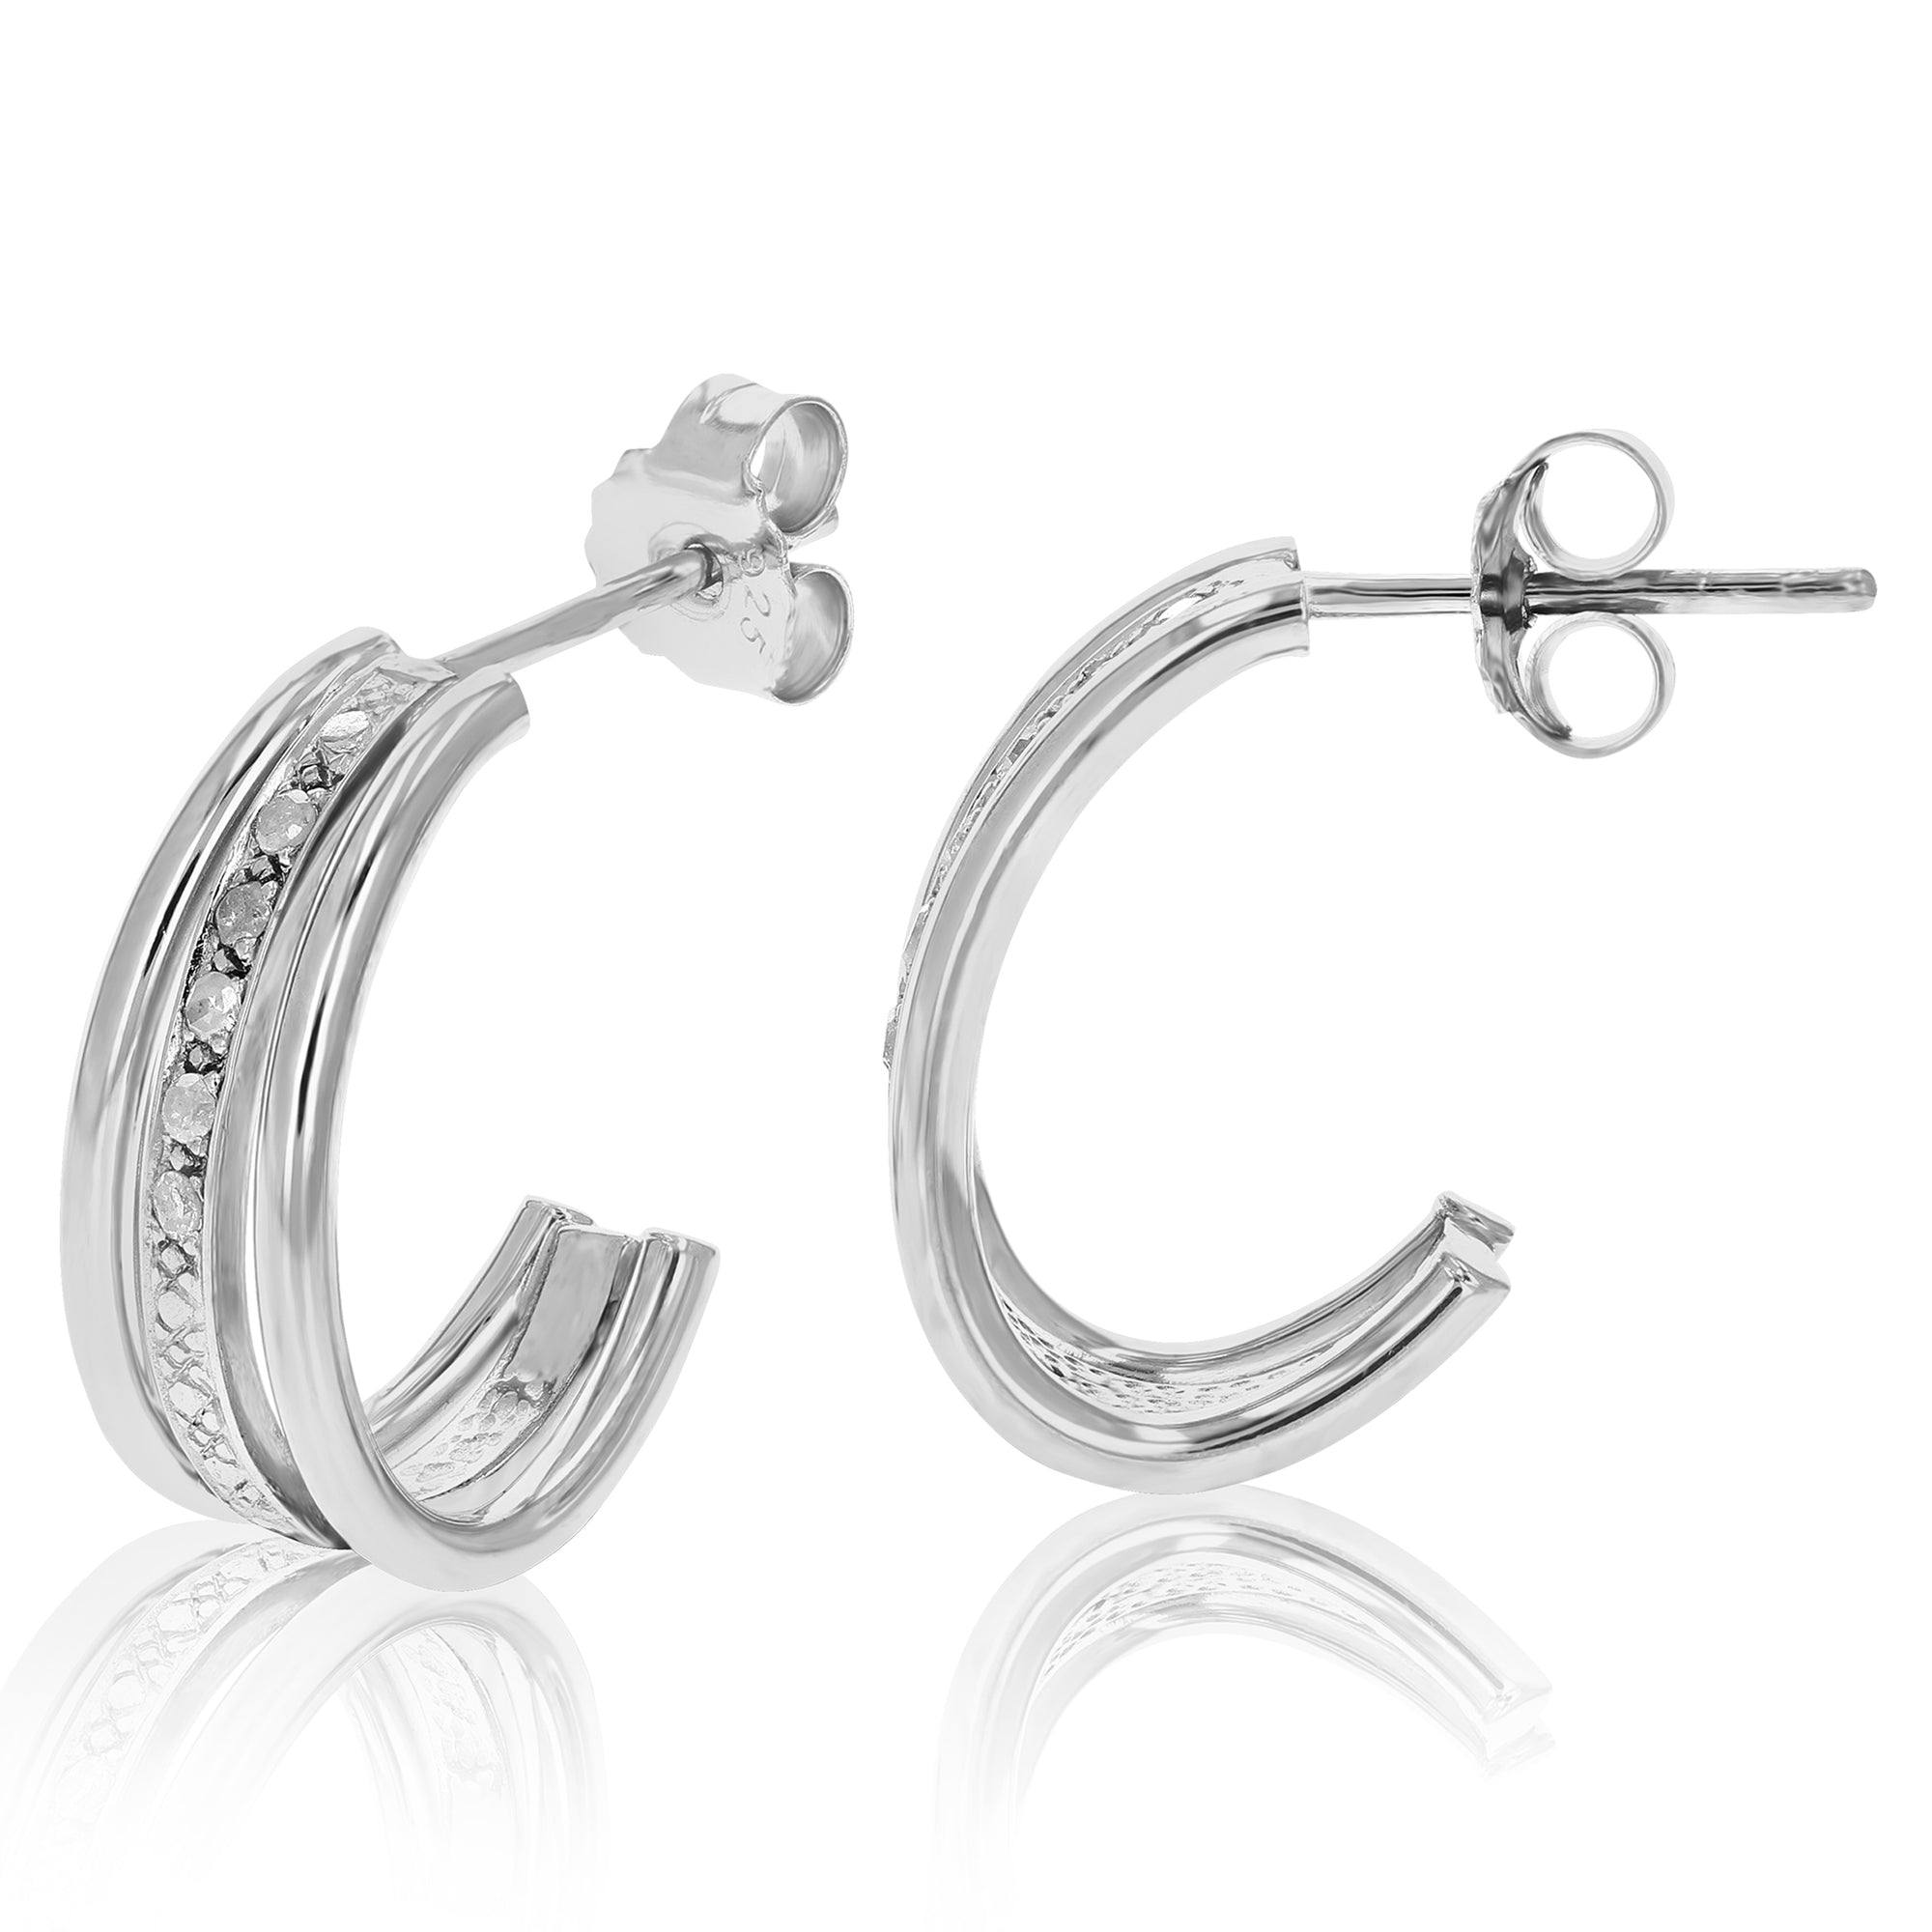 1/10 cttw Diamond Hoop Earrings .925 Sterling Silver With Rhodium Plating